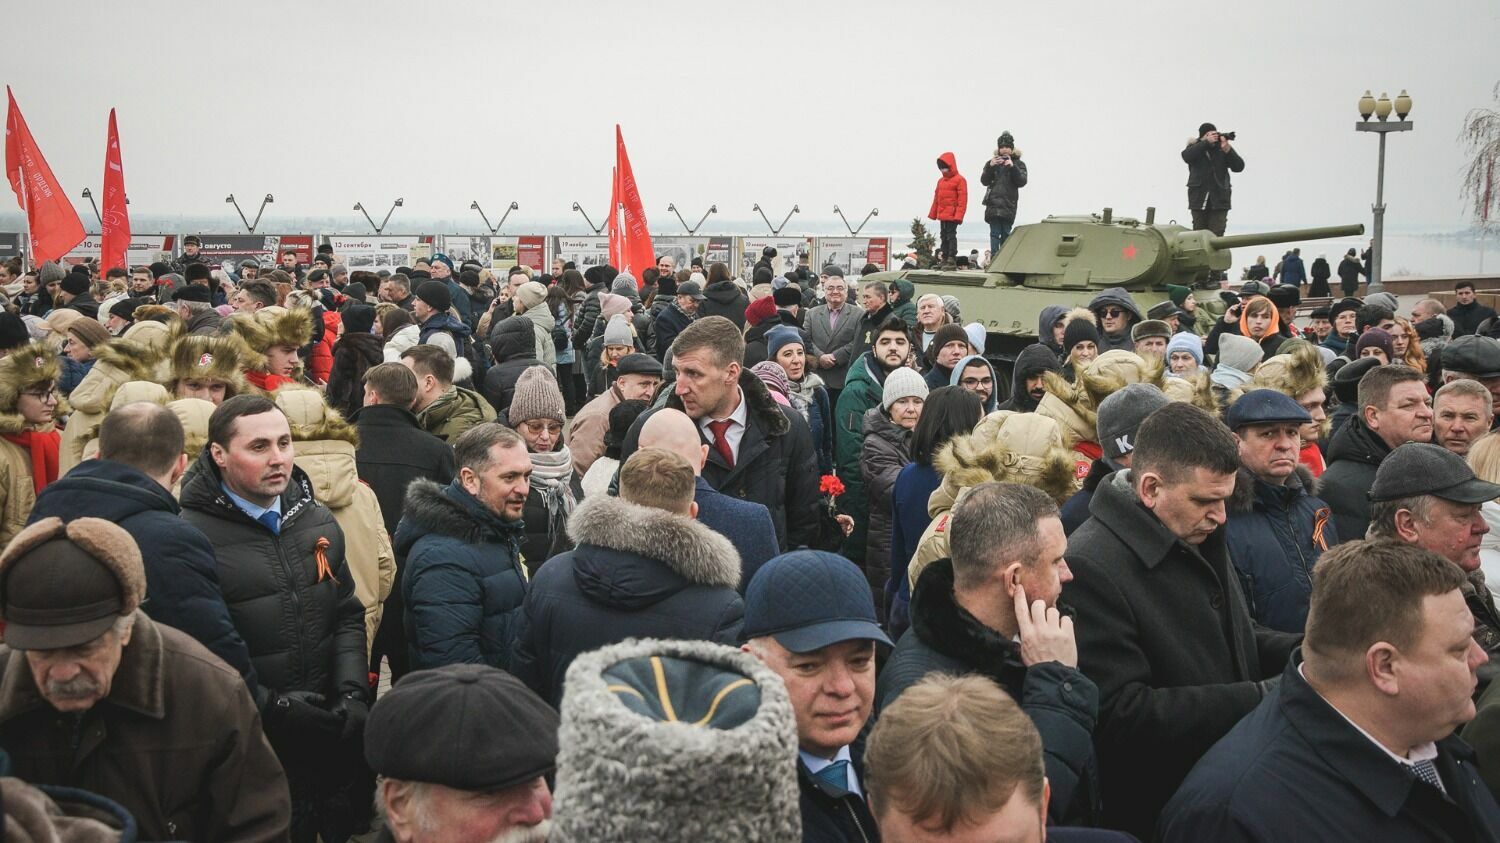 Бронзовые бюсты открыли на территории музея-панорамы "Сталинградская битва"